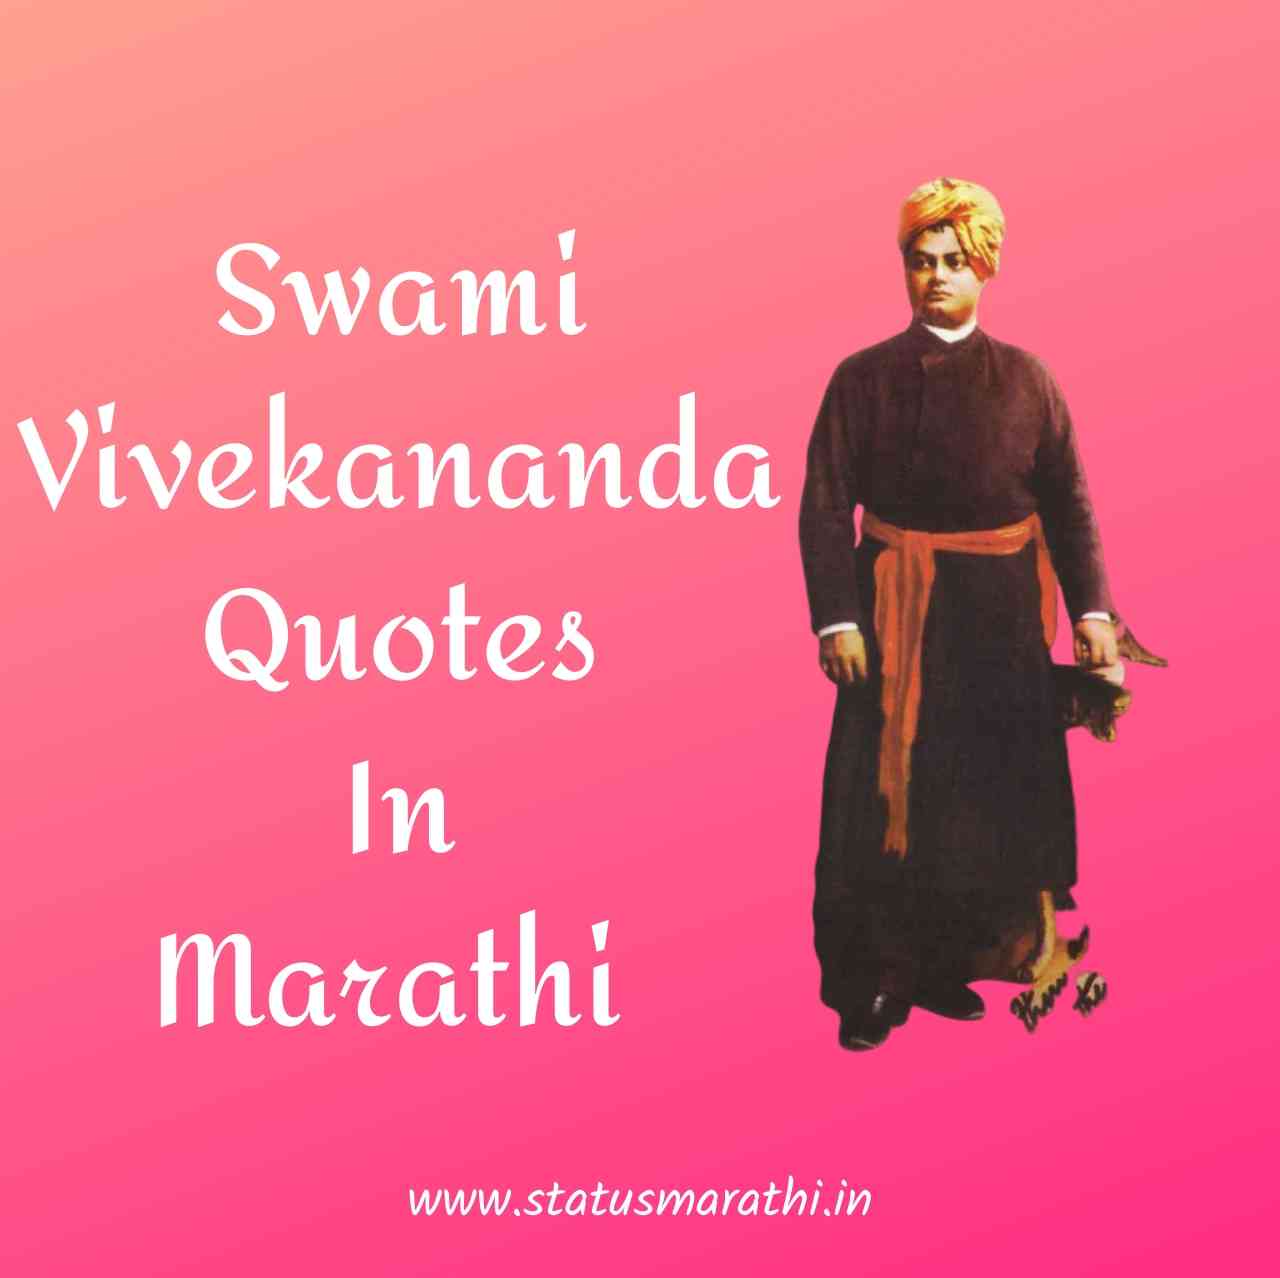 Swami Vivekananda Quotes In Marathi